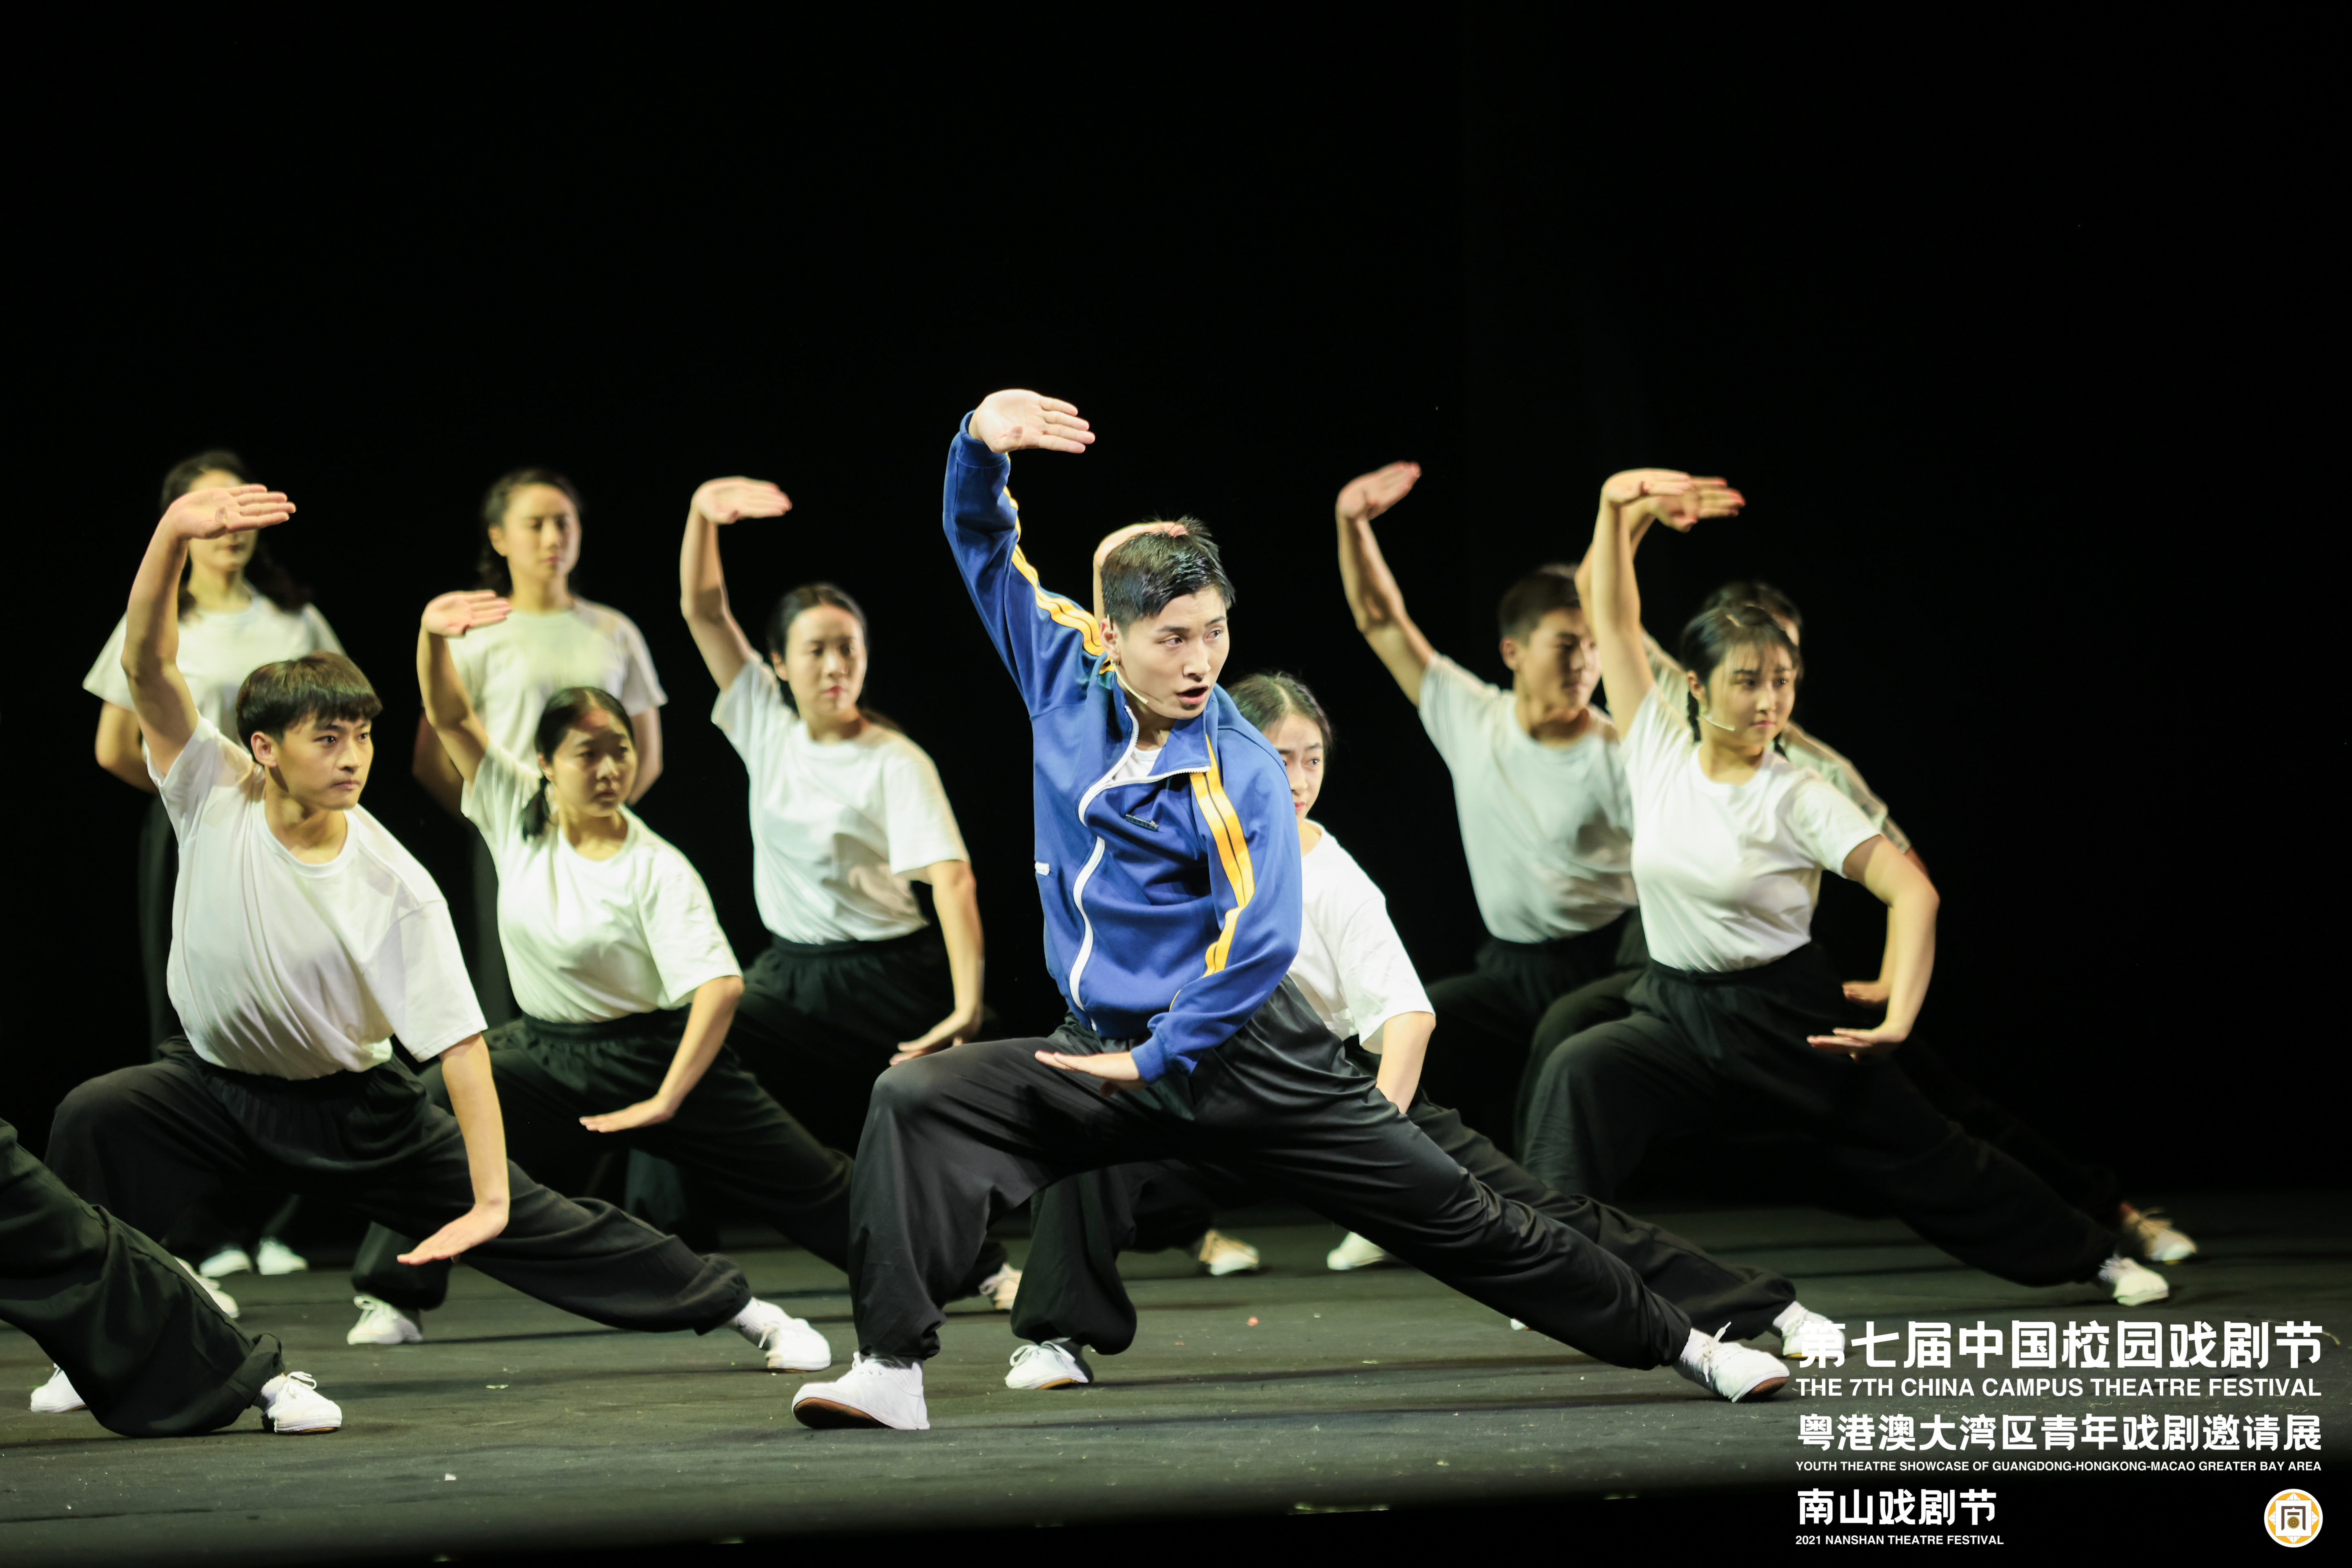 蔡龙云亮相第七届中国校园戏剧节并获优秀剧目奖